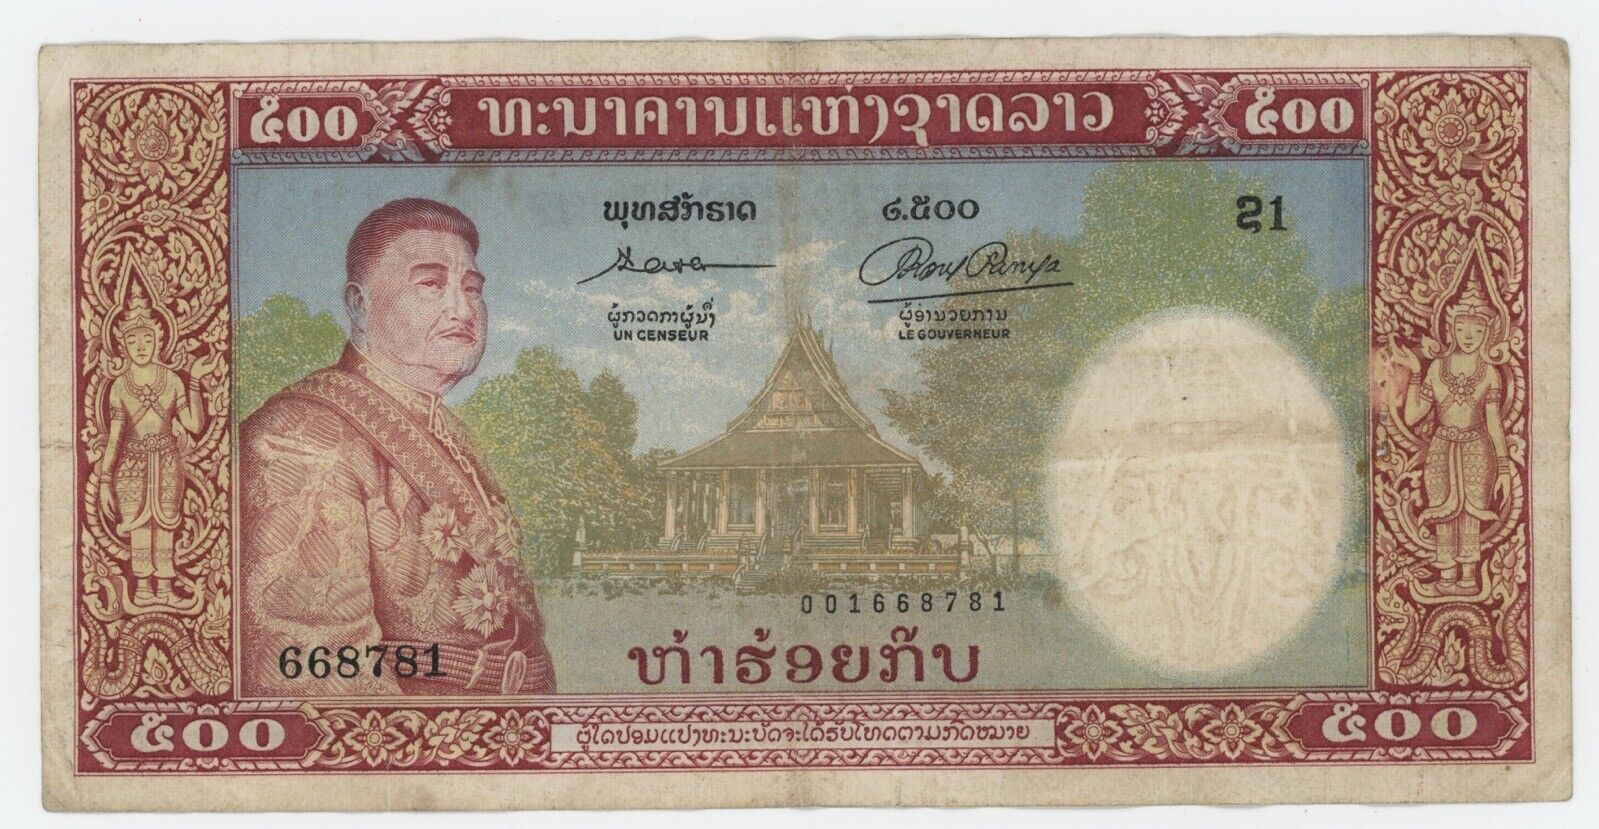 Lao Laos 500 Kip ND 1957 Pick 7.a VF- pin holes check scan Circulated Banknote